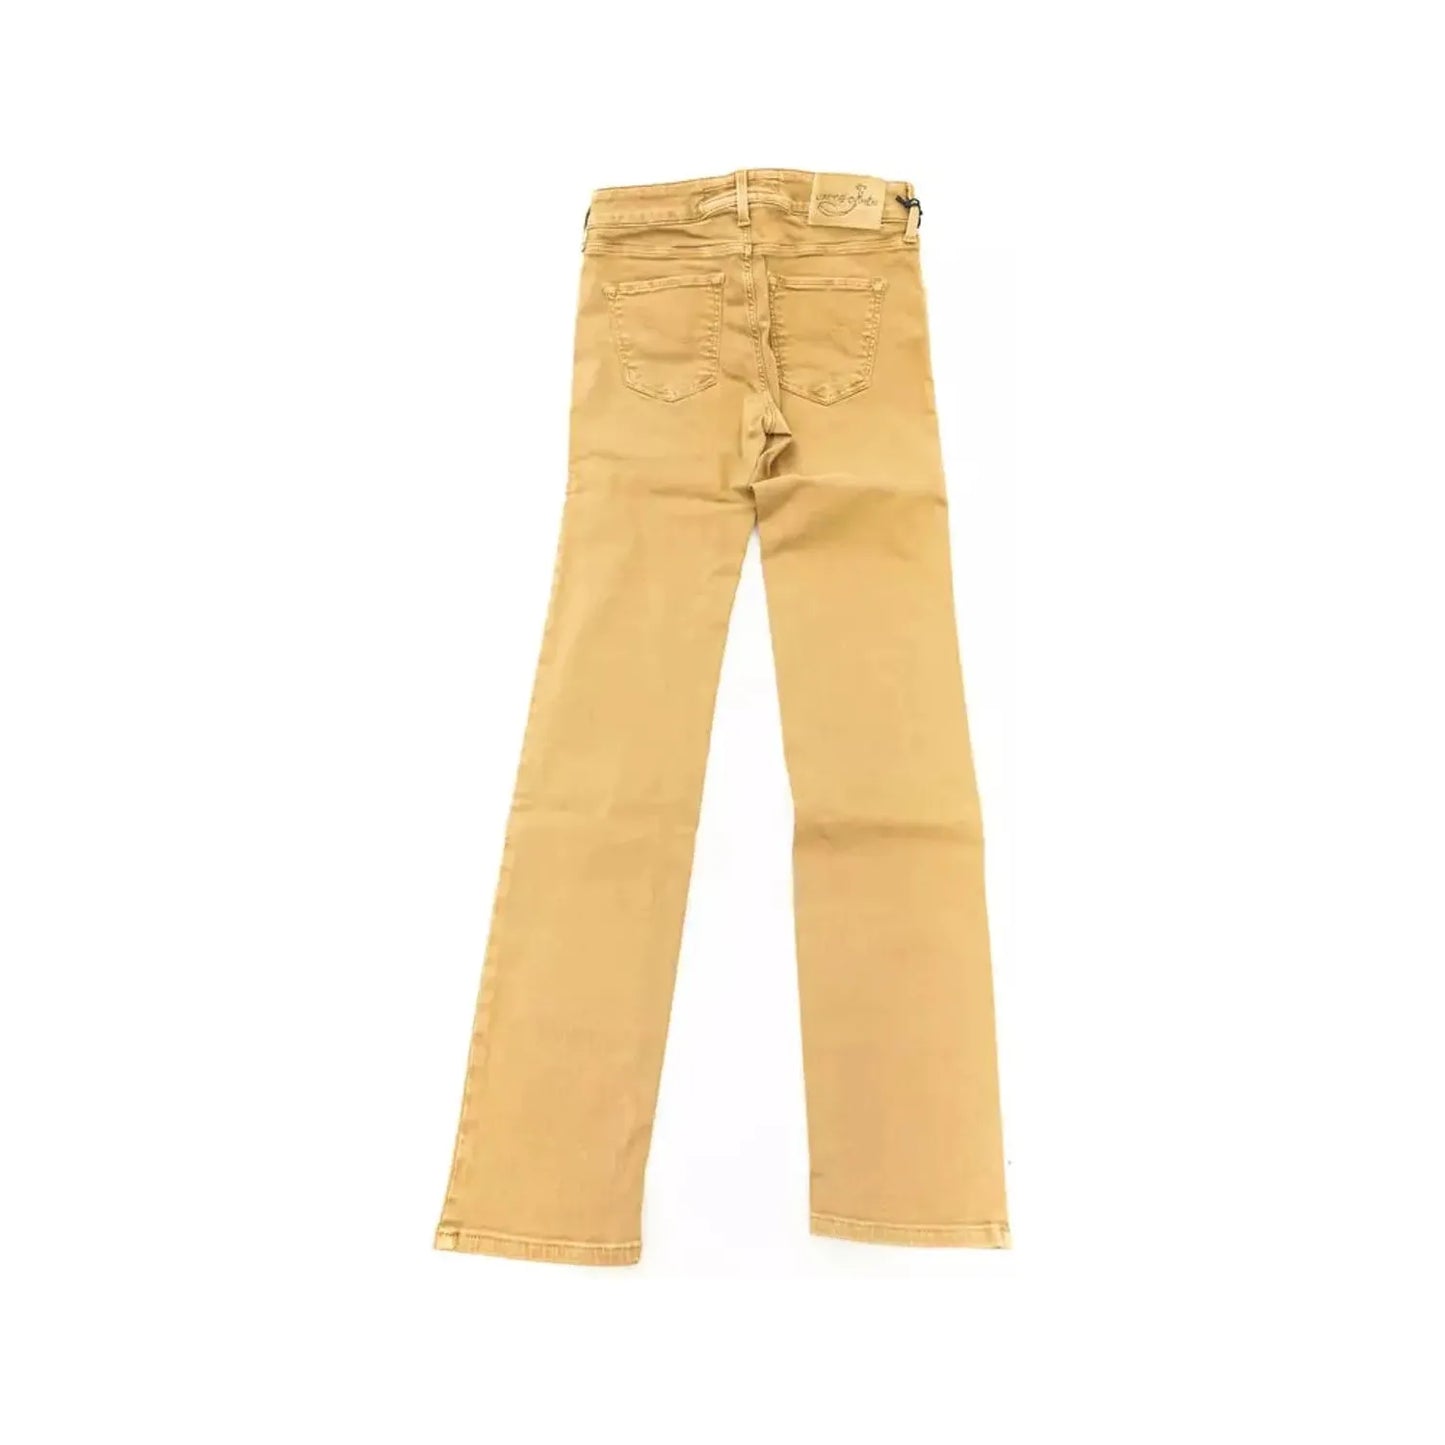 Jacob Cohen Chic Beige Vintage-Inspired Designer Jeans beige-cotton-jeans-pant-8 product-22273-940371663-22-d1445b0d-426.webp